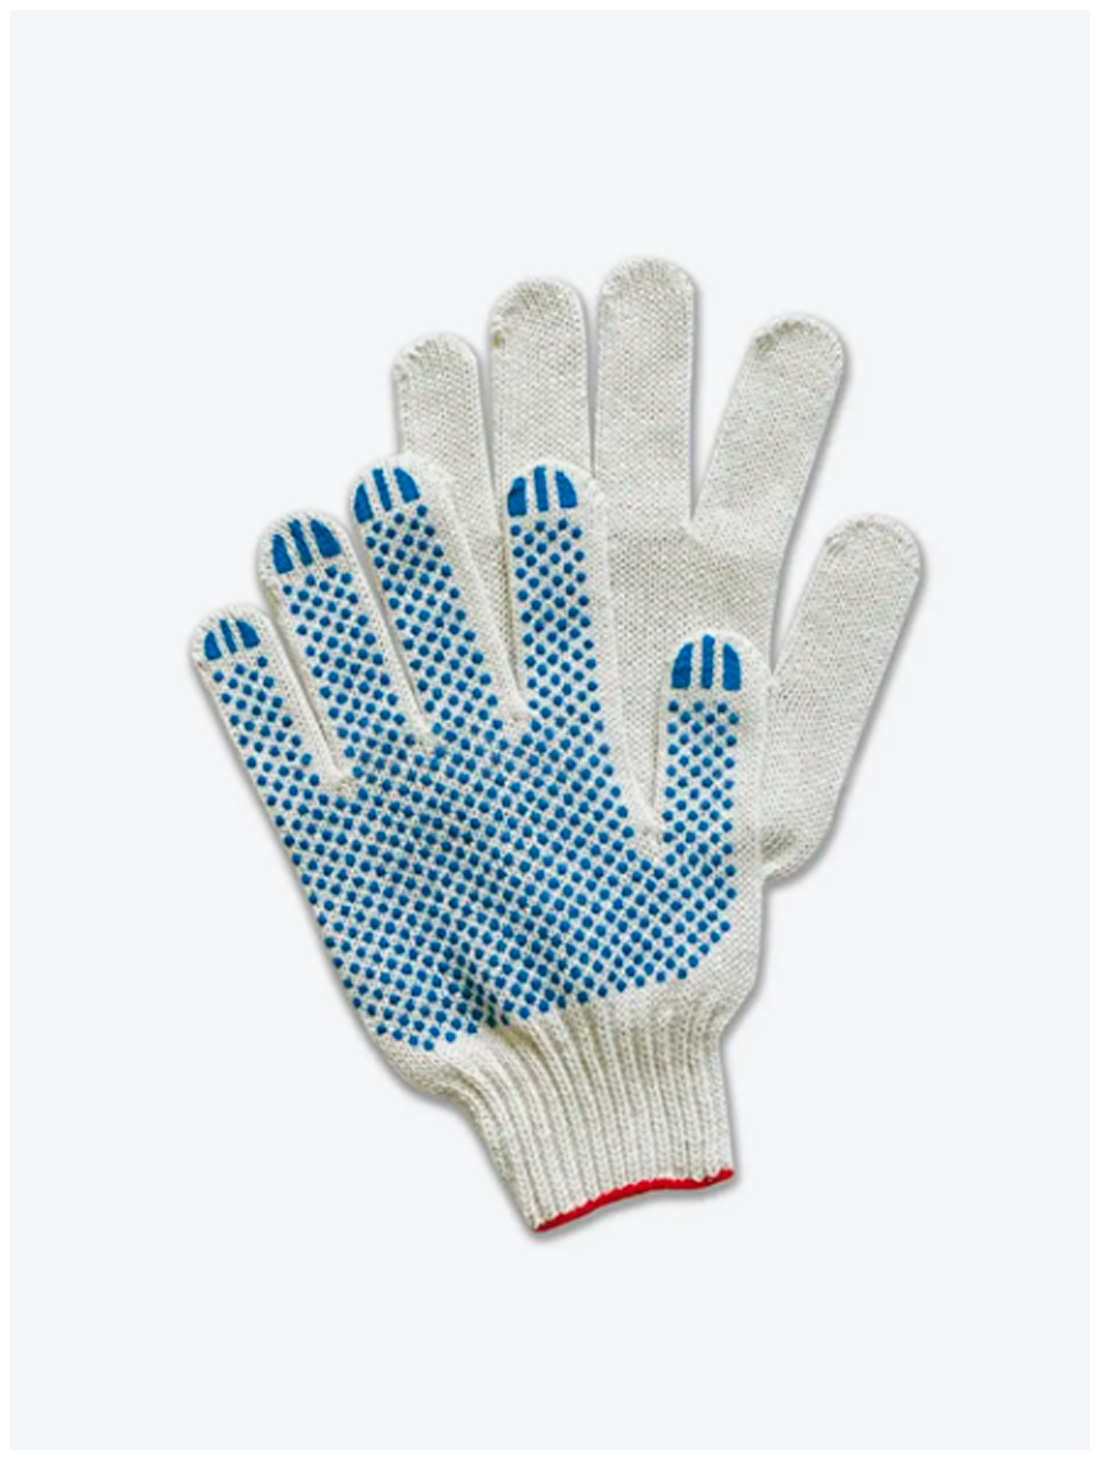 Перчатки рабочие Волга Полимер трикотажные хб с пвх 10 пар 10 класс / рабочие защитные перчатки / 5 нитей